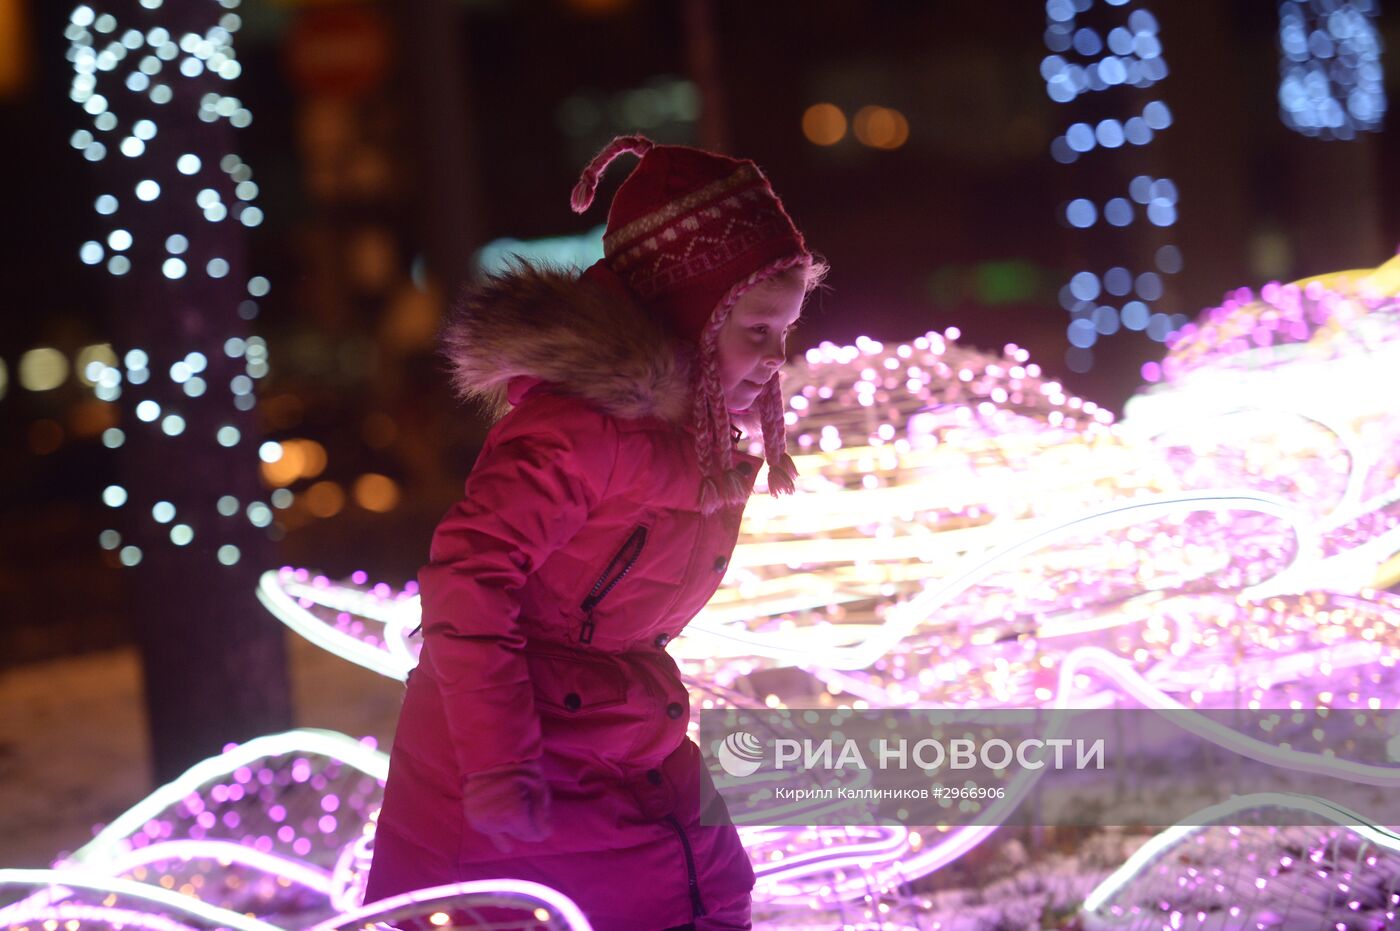 Вечерняя подсветка на улицах Москвы